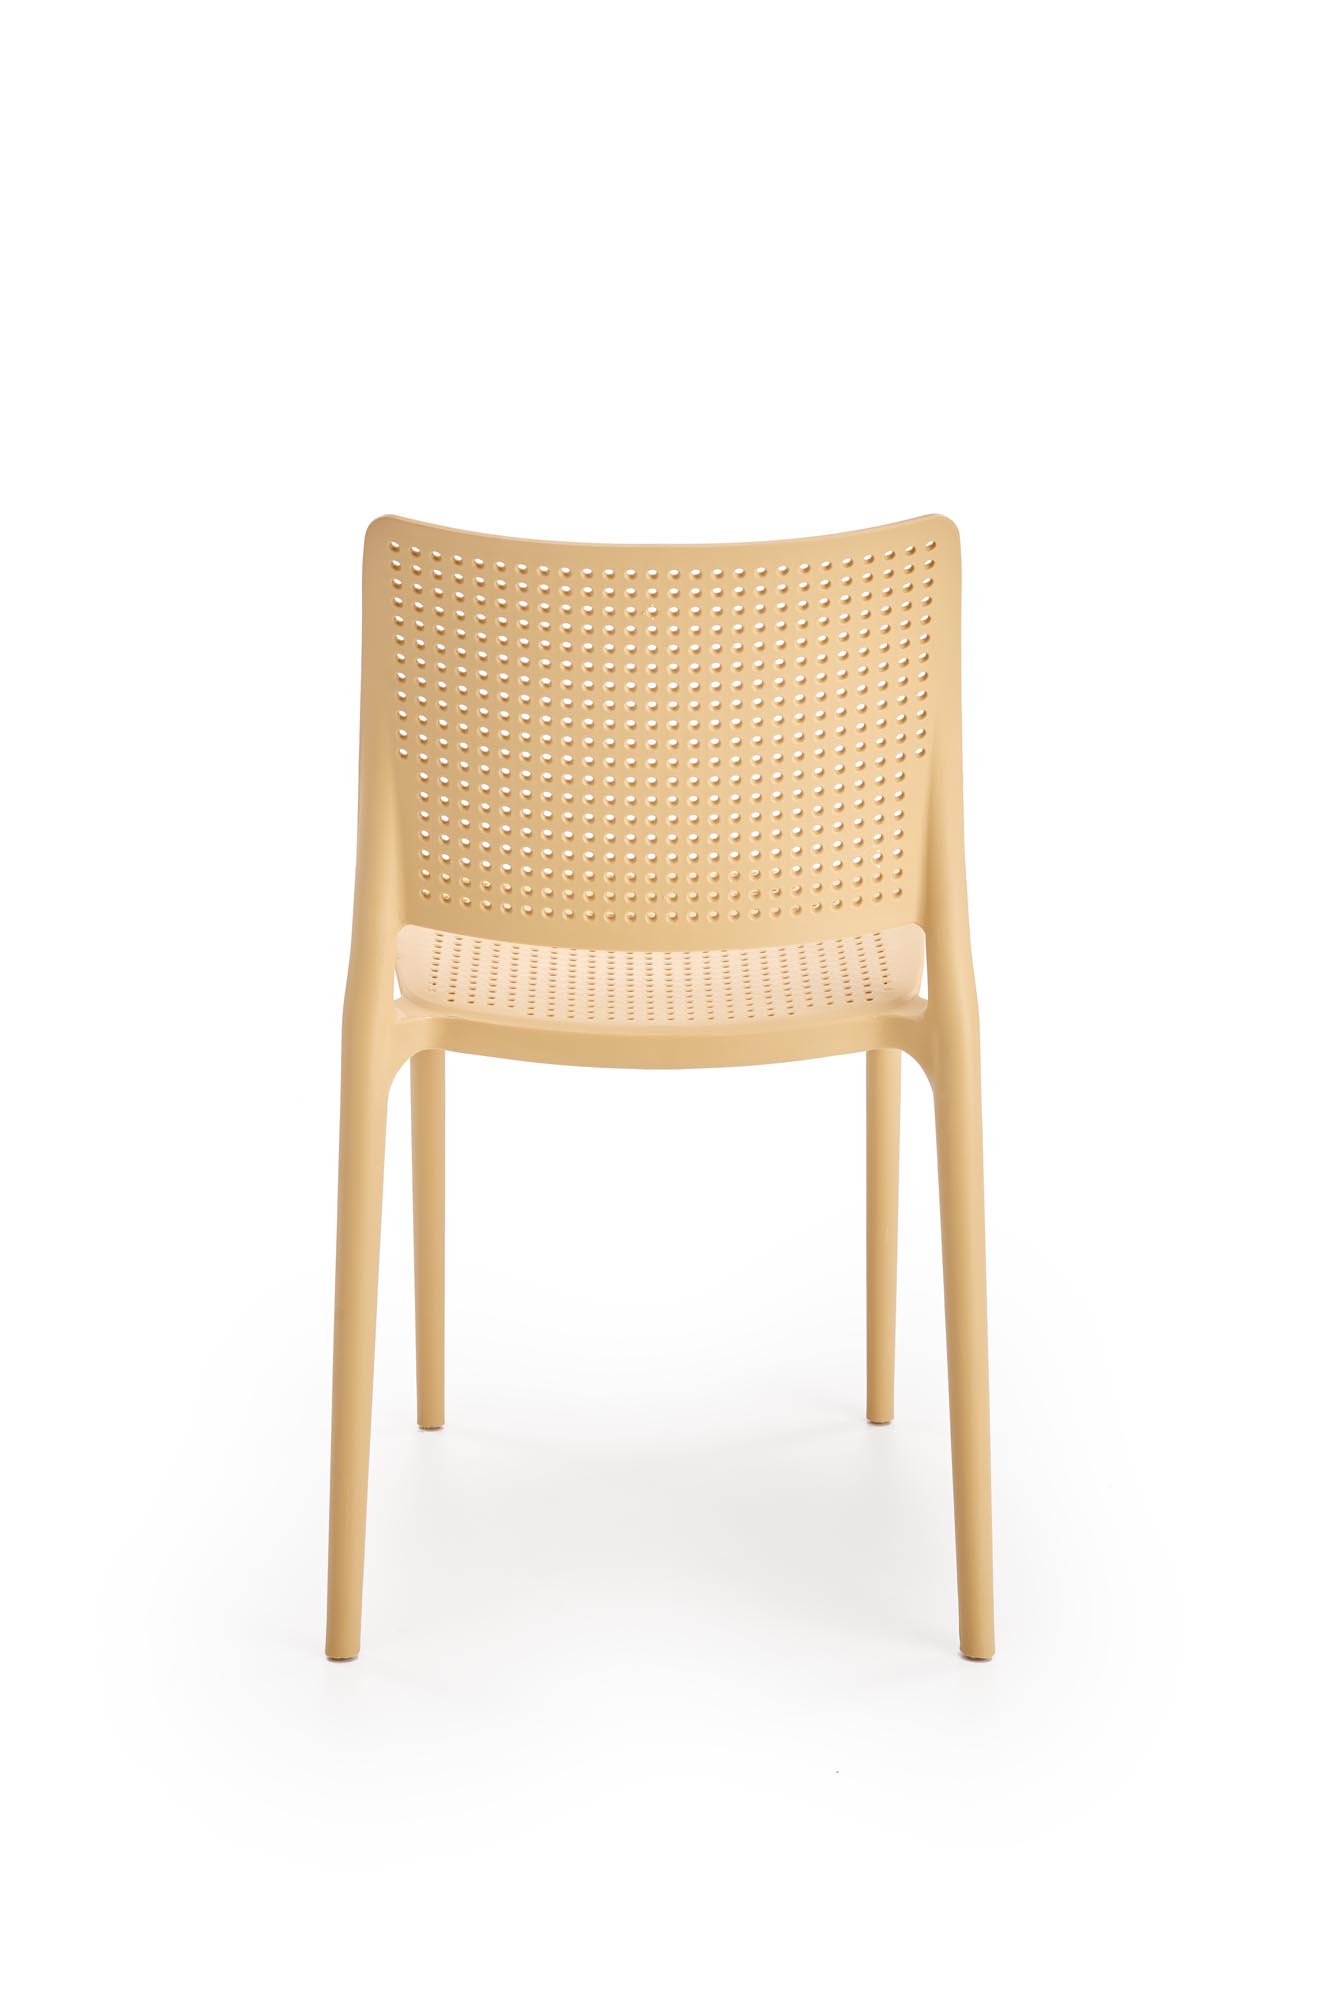 Scaun plastic K514 - portocaliu  Židle z tworzywa k514 - Oranžový